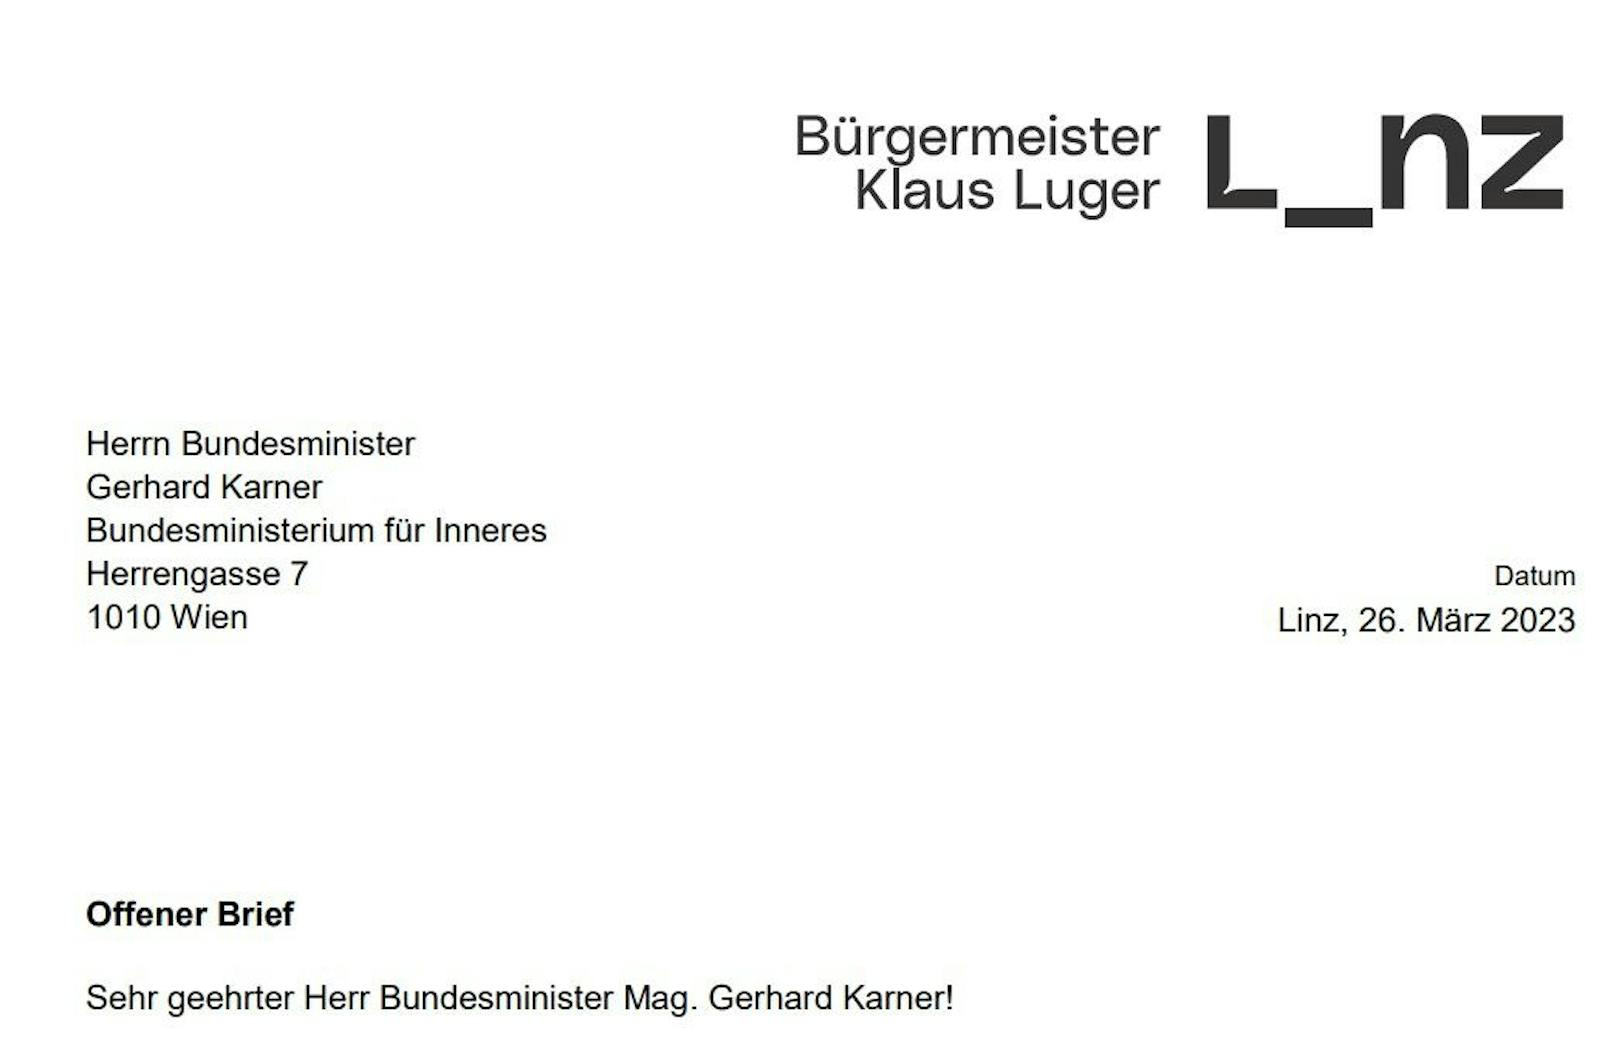 Der Linzer Bürgermeister Klaus Luger schrieb einen offenen Brief an Innenminister Karner.